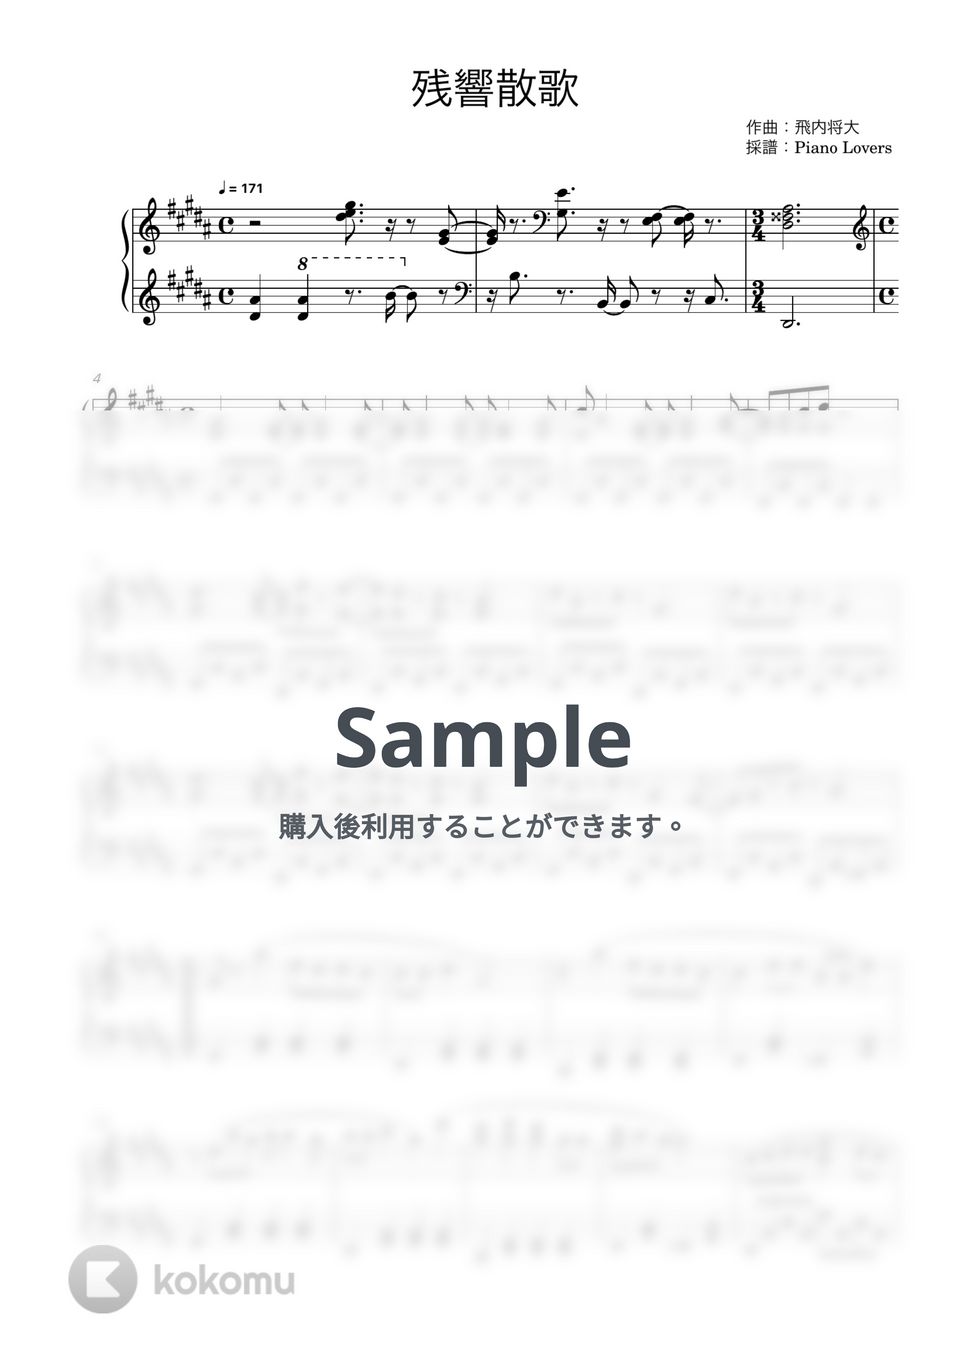 Aimer - 残響散歌 (鬼滅の刃 / ピアノ楽譜 / 初級) by Piano Lovers. jp